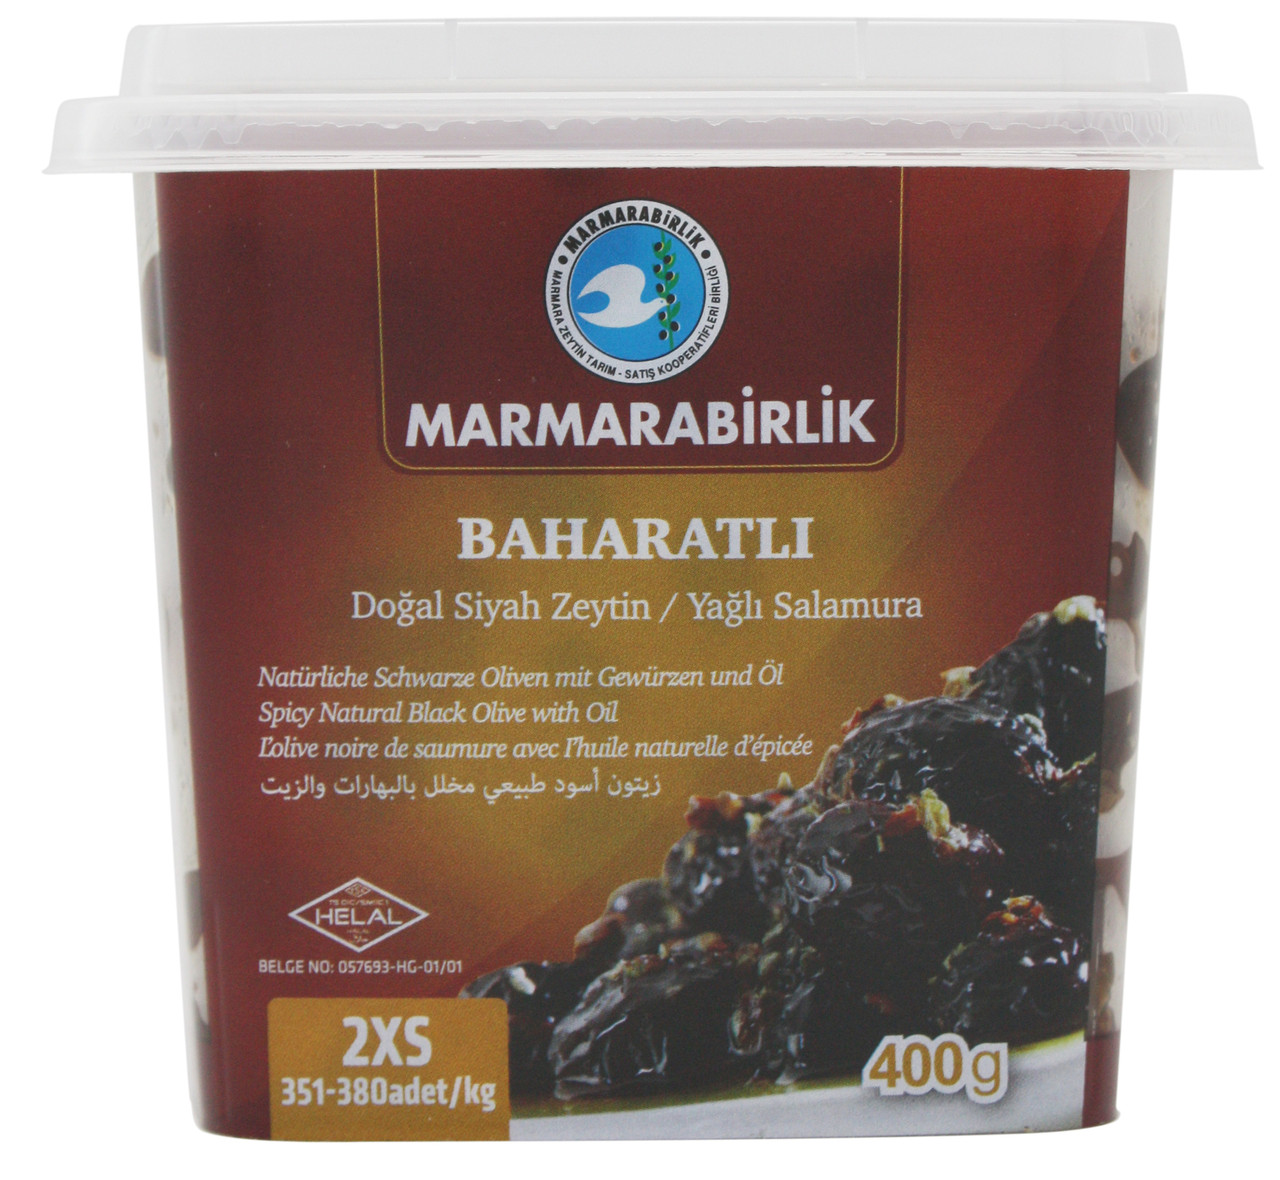 Маслины Marmarabirlik Baharatli в масле со специями 2XS, 400 гр.(Турция)